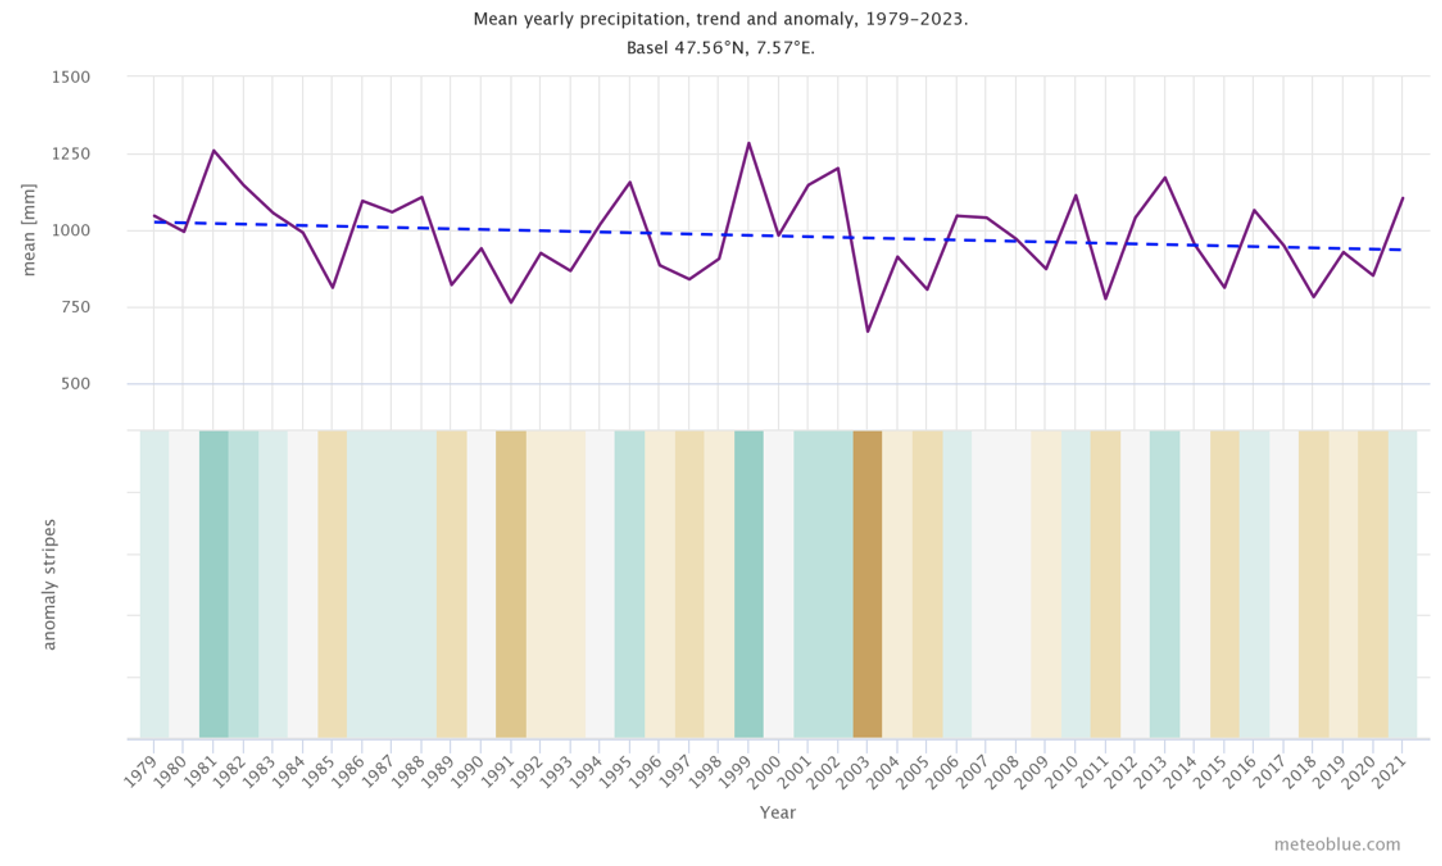 Precipitación media anual, tendencia y anomalía de Basilea, Suiza.